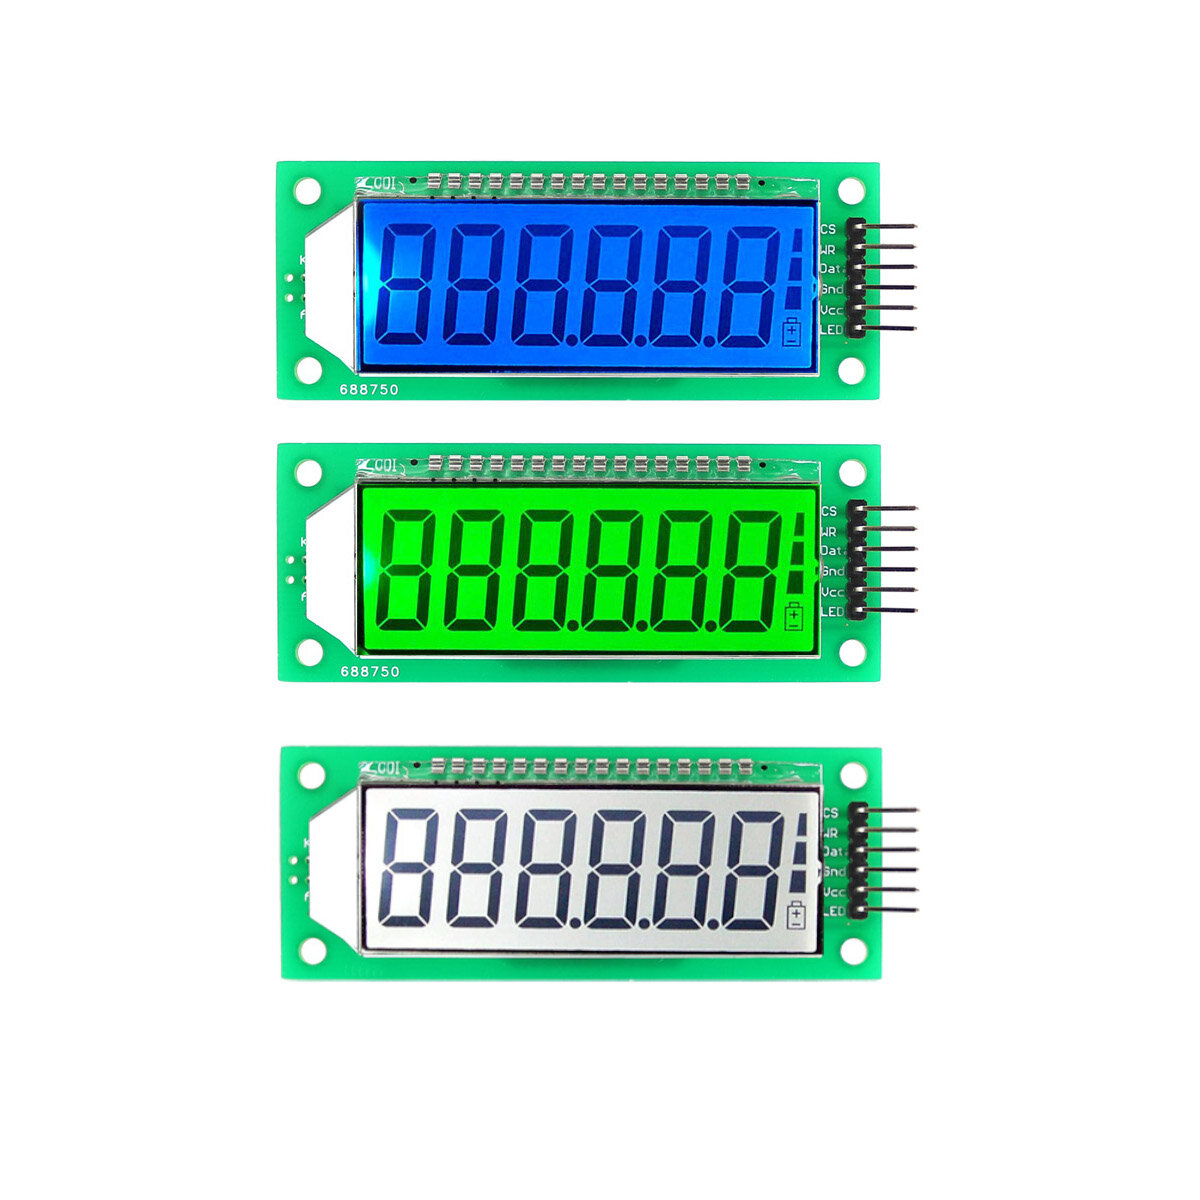 OPEN-SMART? 2,4 inch 6-cijferige 7-segment LCD-displaymodule met witte/blauwe/groene achtergrondverl